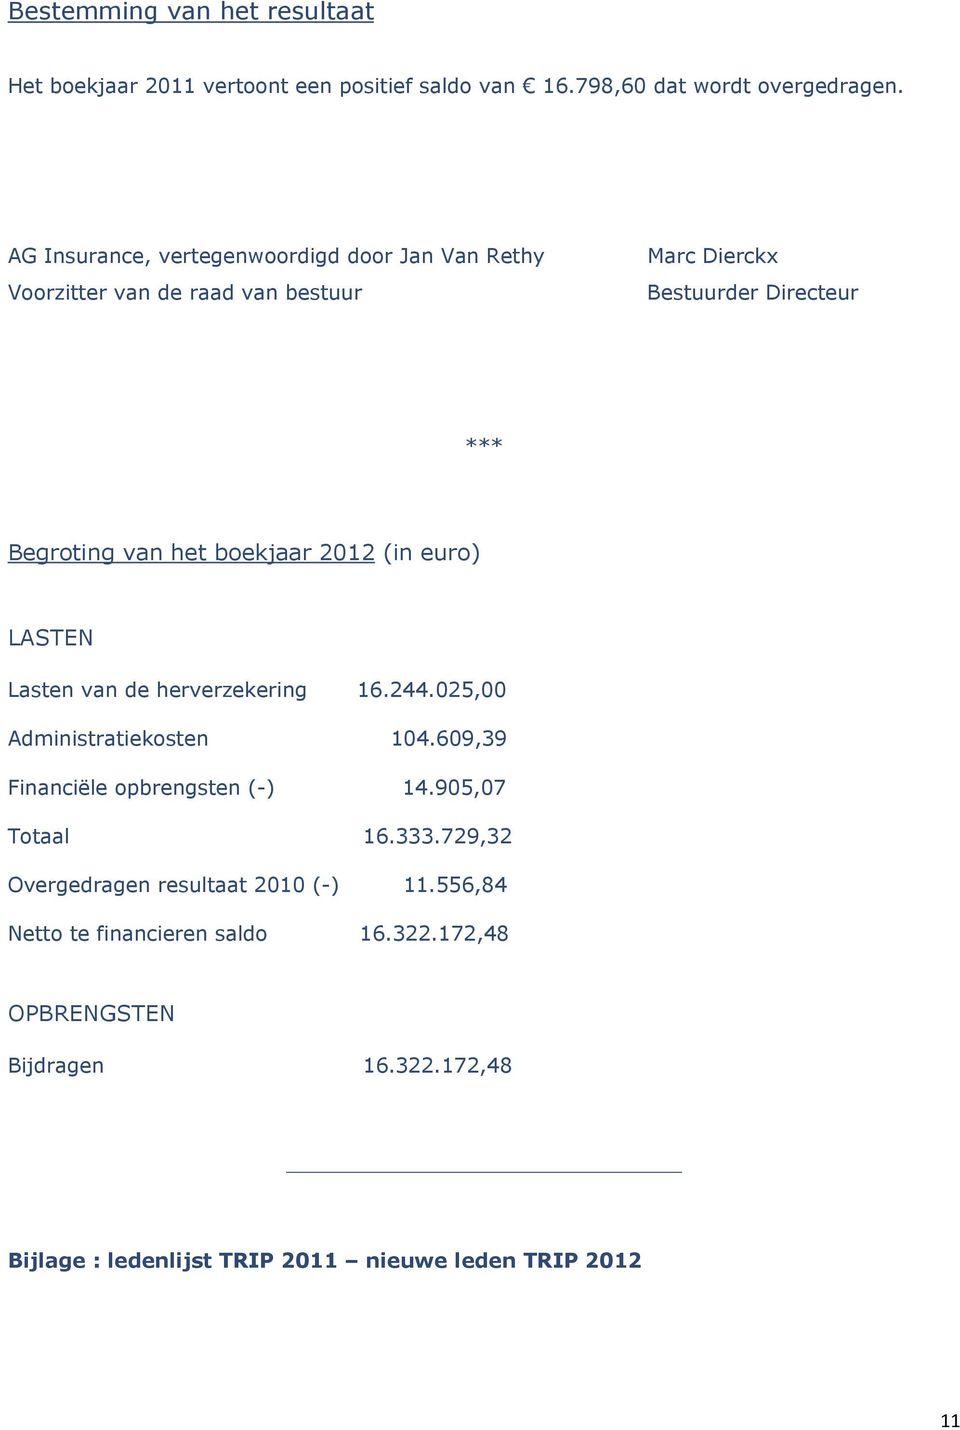 2012 (in euro) LASTEN Lasten van de herverzekering 16.244.025,00 Administratiekosten 104.609,39 Financiële opbrengsten (-) 14.905,07 Totaal 16.333.